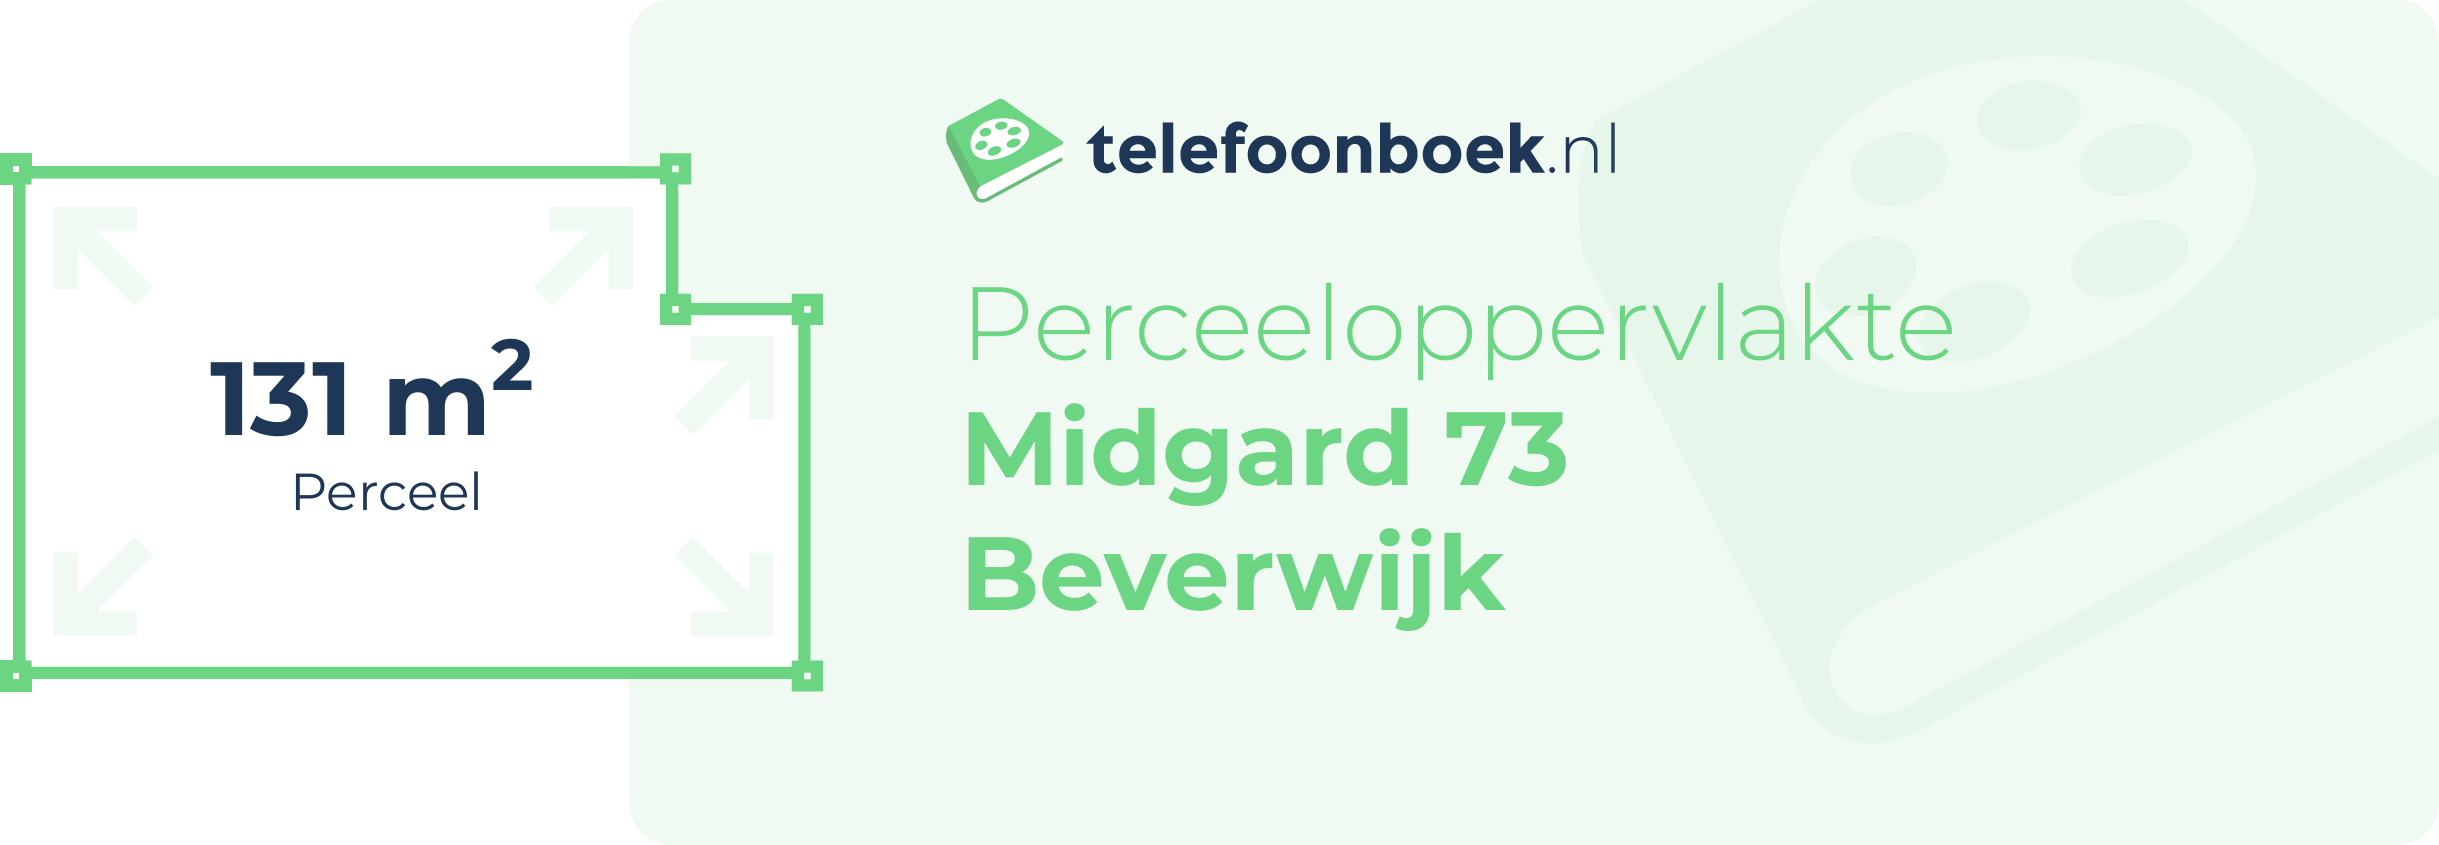 Perceeloppervlakte Midgard 73 Beverwijk